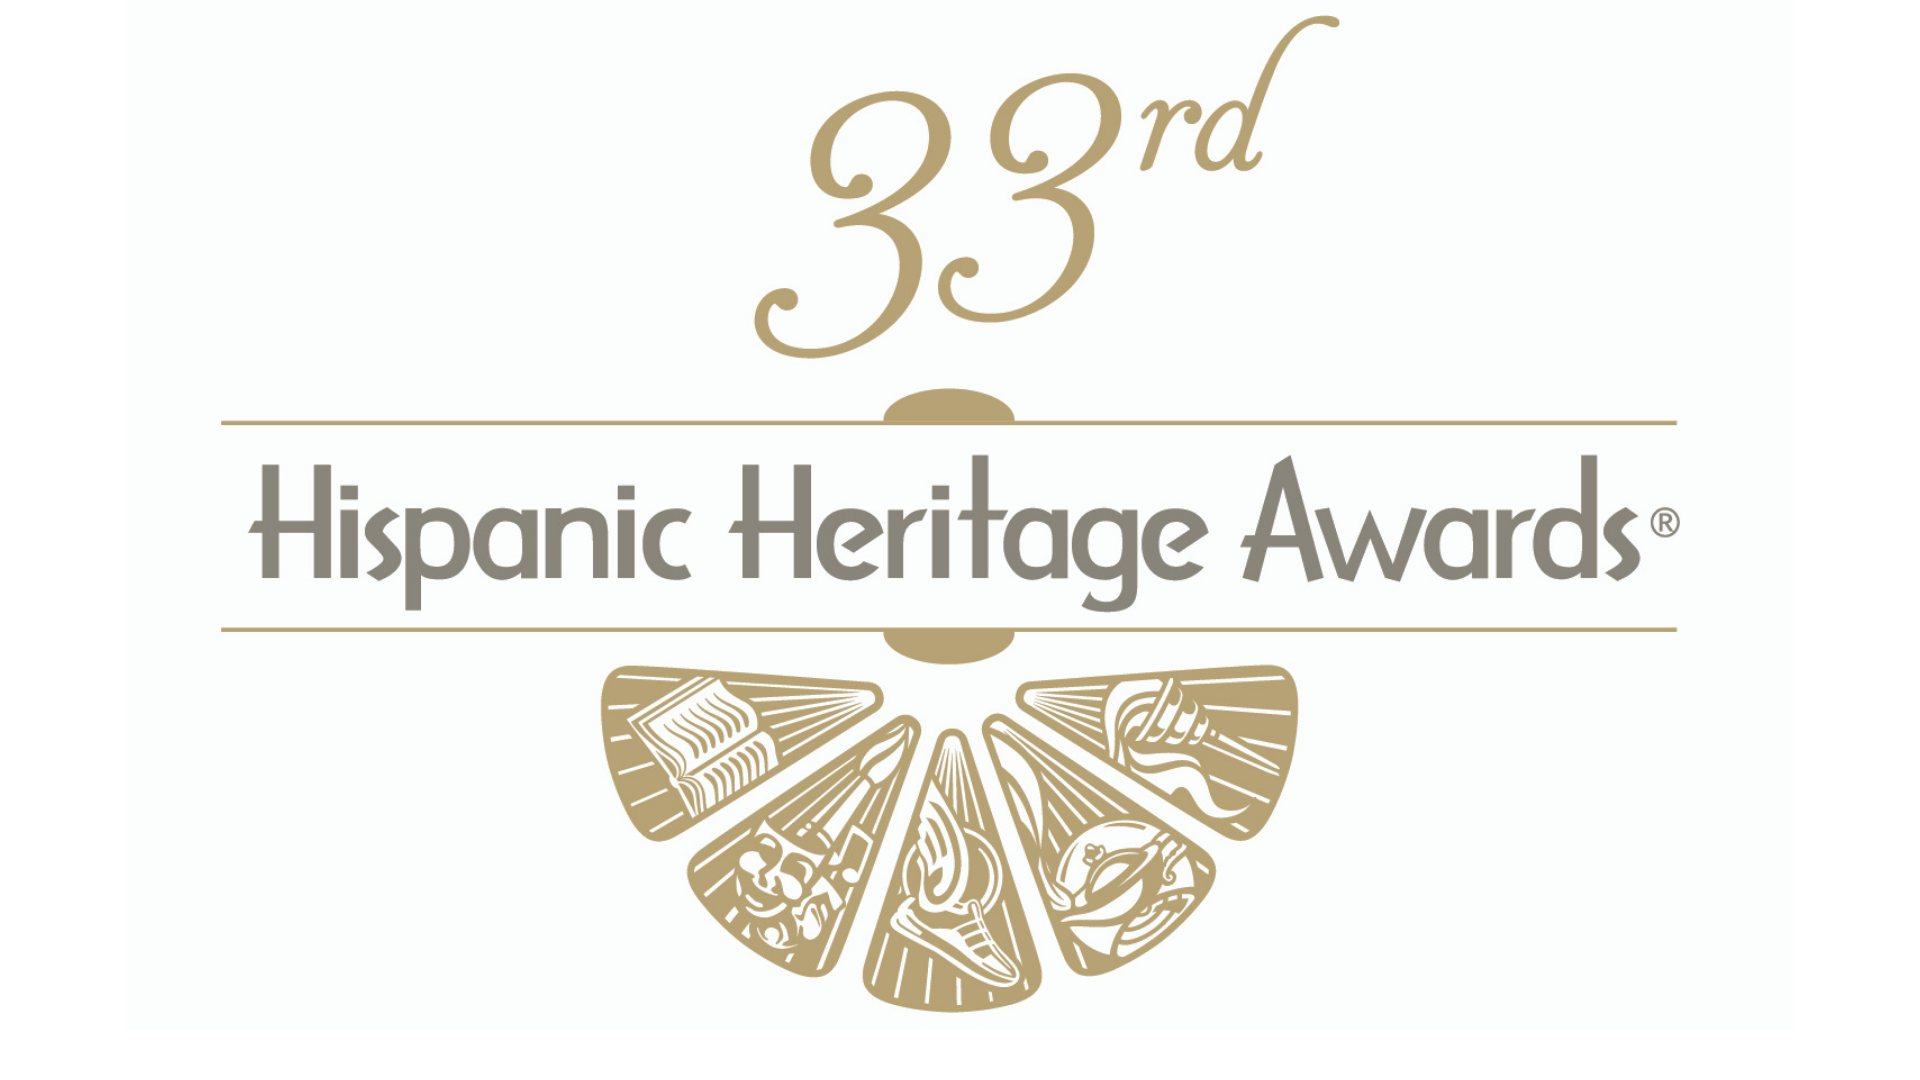 The Hispanic Heritage Awards 2020